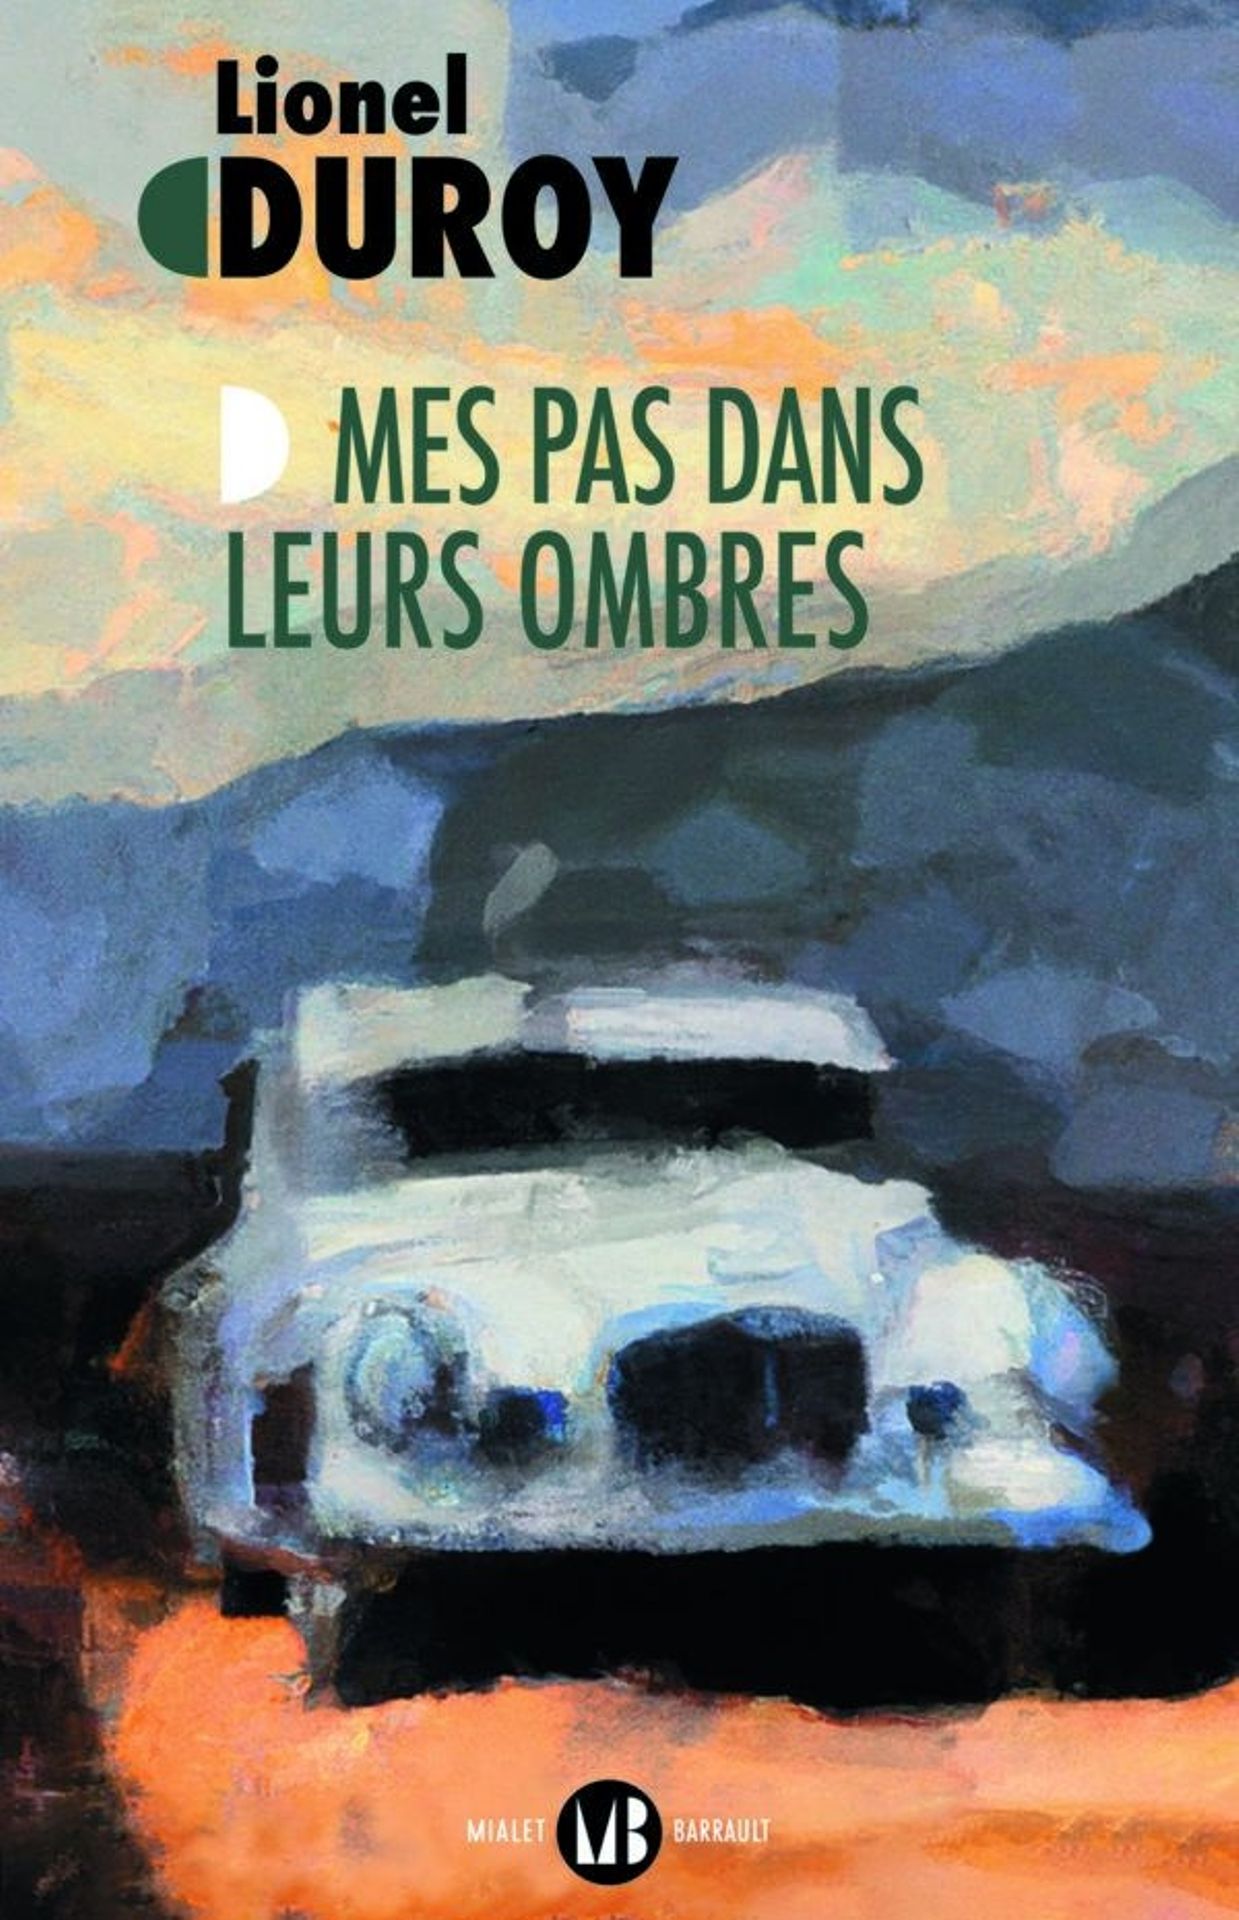 Première de couverture du dernier roman de Lionel Duroy, "Mes pas dans leurs ombres" publié aux éditions Mialet Barrault.